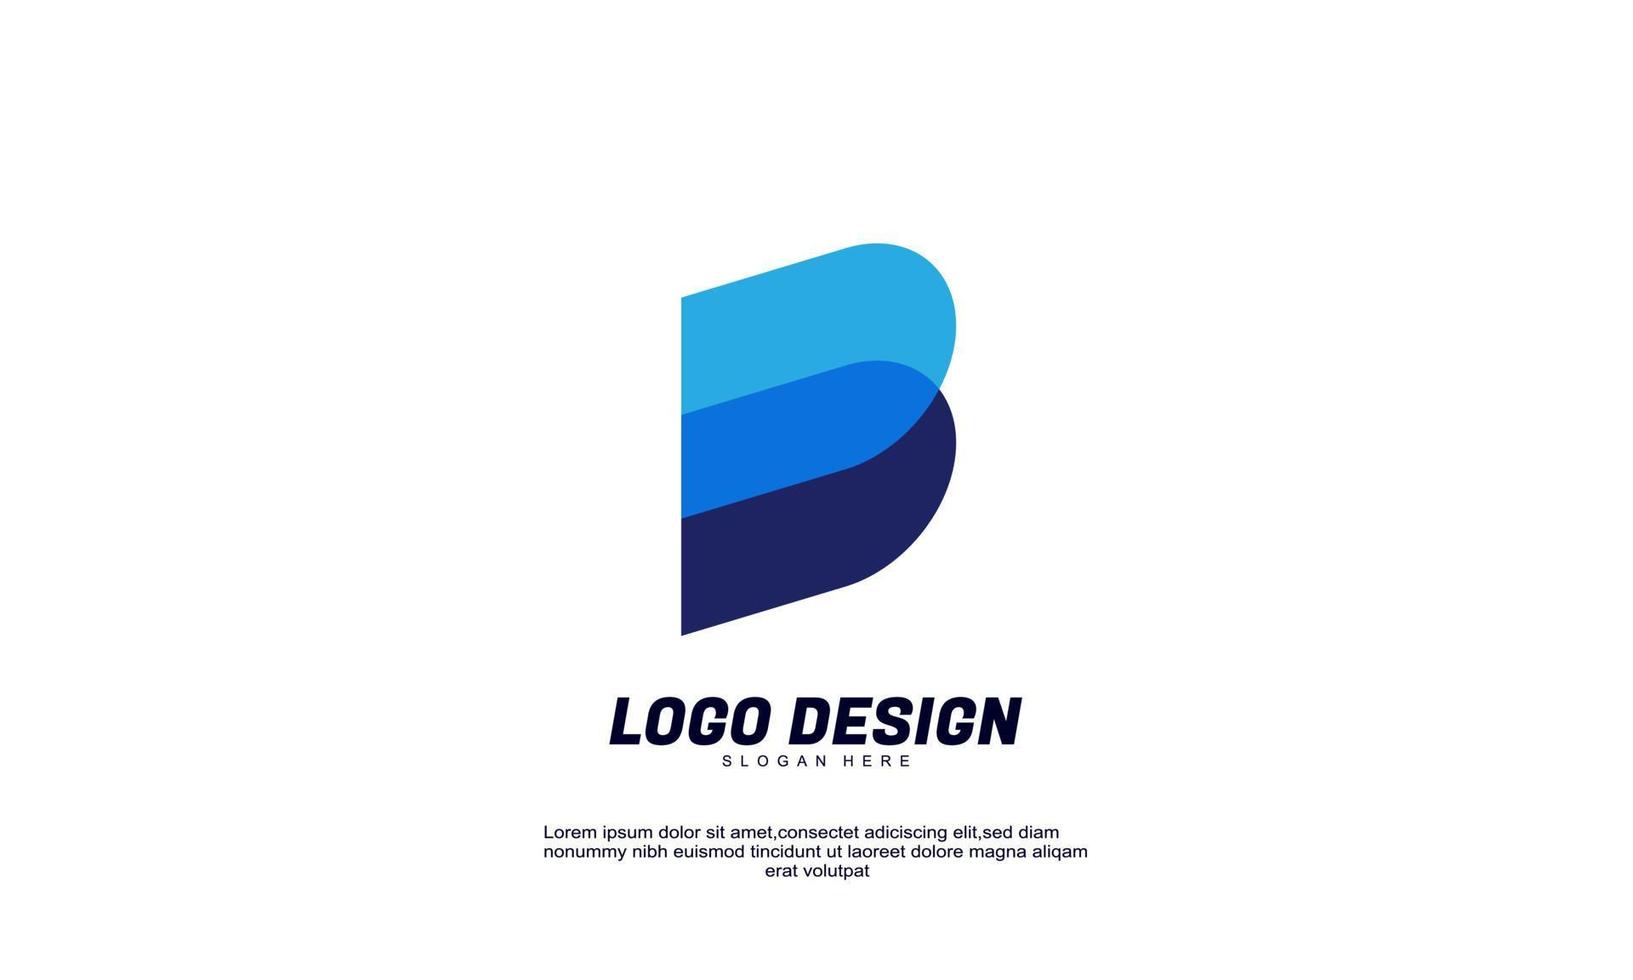 Tolles kreatives modernes Ideen-Branding für Unternehmen oder mehrfarbiges Firmendesign mit flachem Design vektor